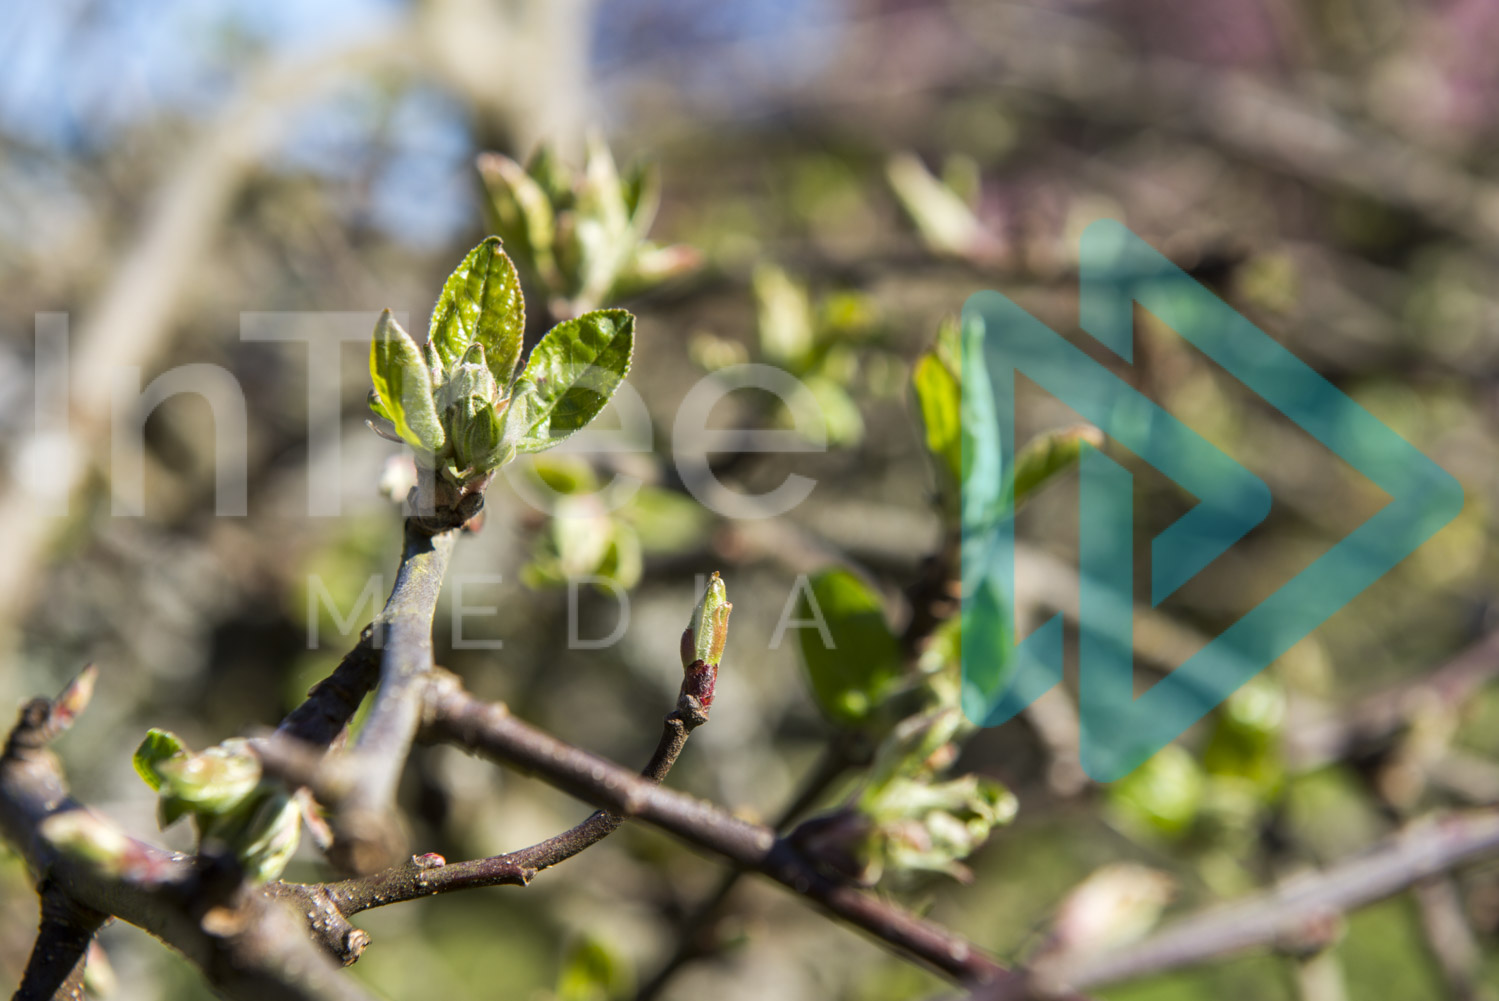 Apple tree bud burst in Spring InTree arborist image 001-21-5394